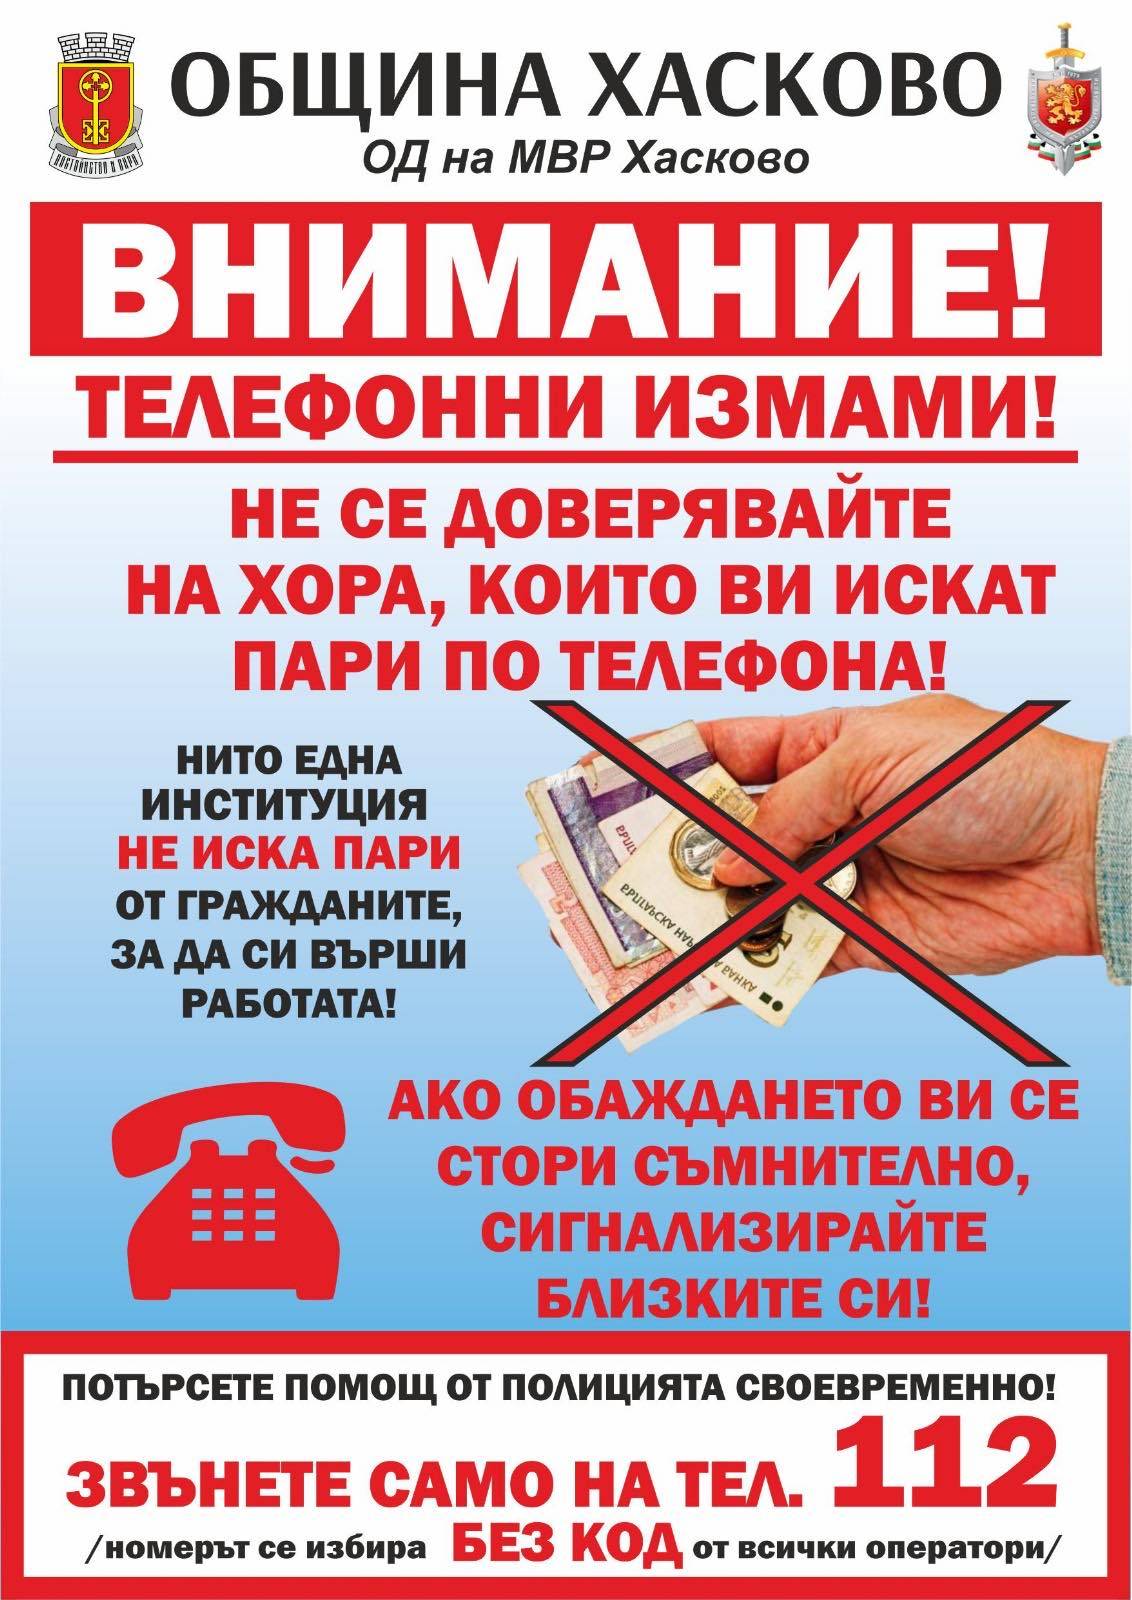  Община Хасково издаде 20 хиляди брошури, съдържащи най-важната информация, която би трябвало да знаят възрастните хора 